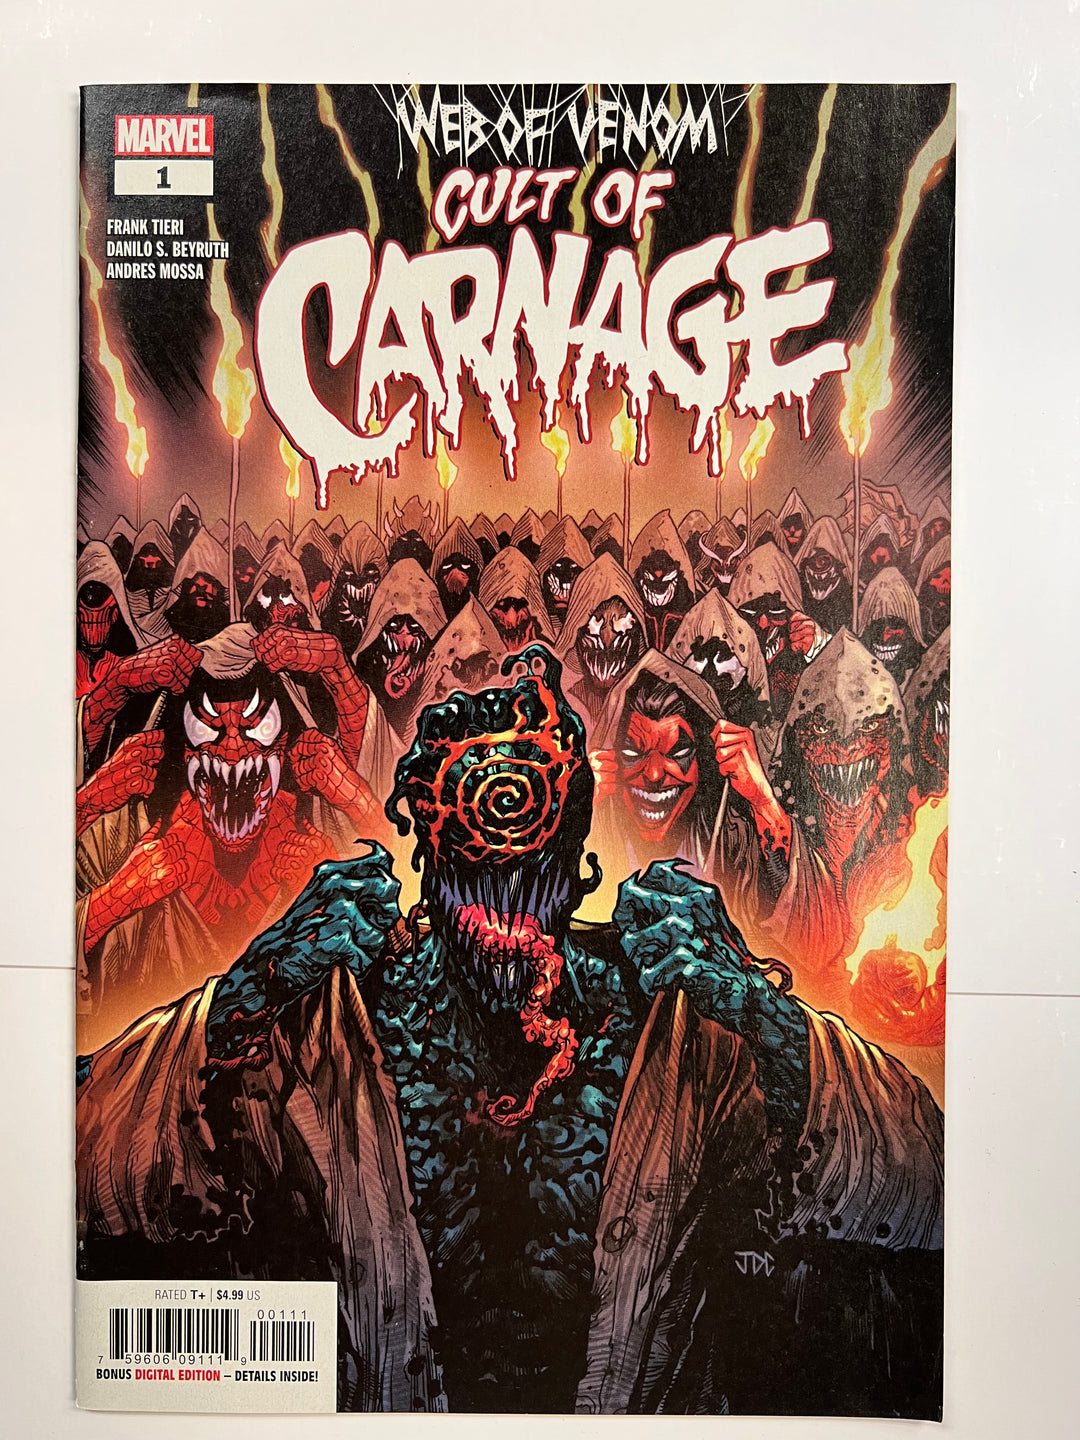 Web of Venom: Cult of Carnage # 1Marvel 2019 VF